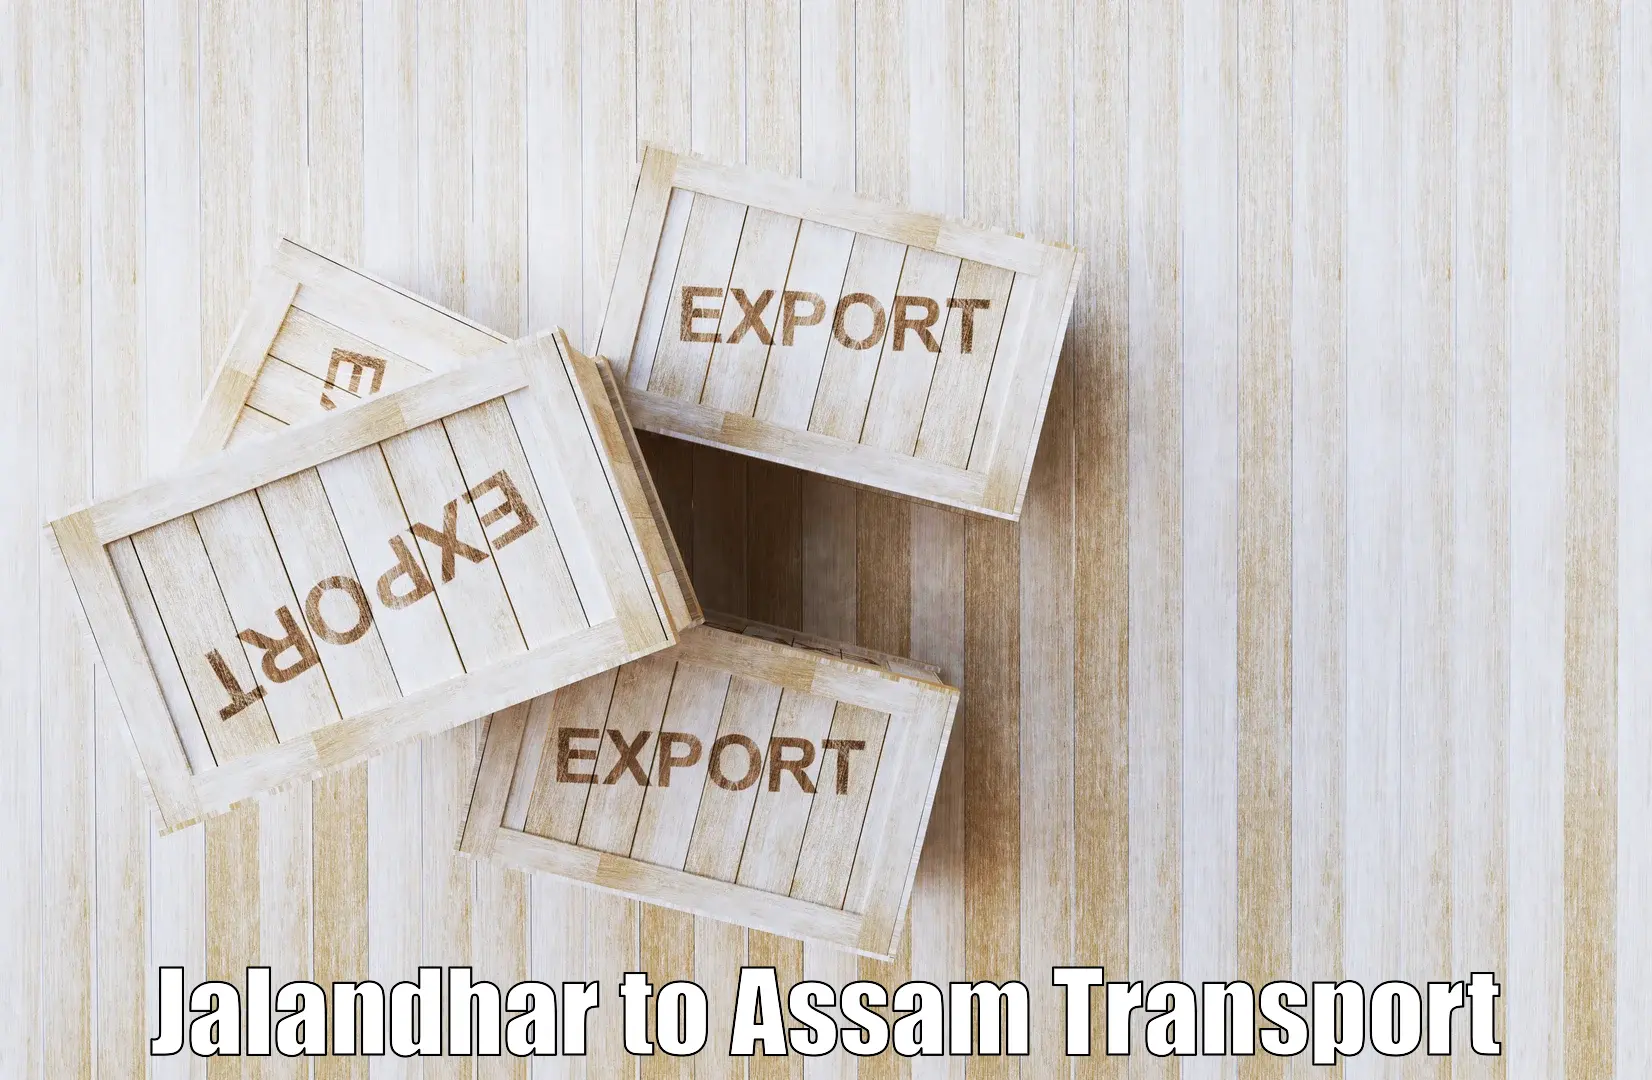 Daily transport service Jalandhar to Assam